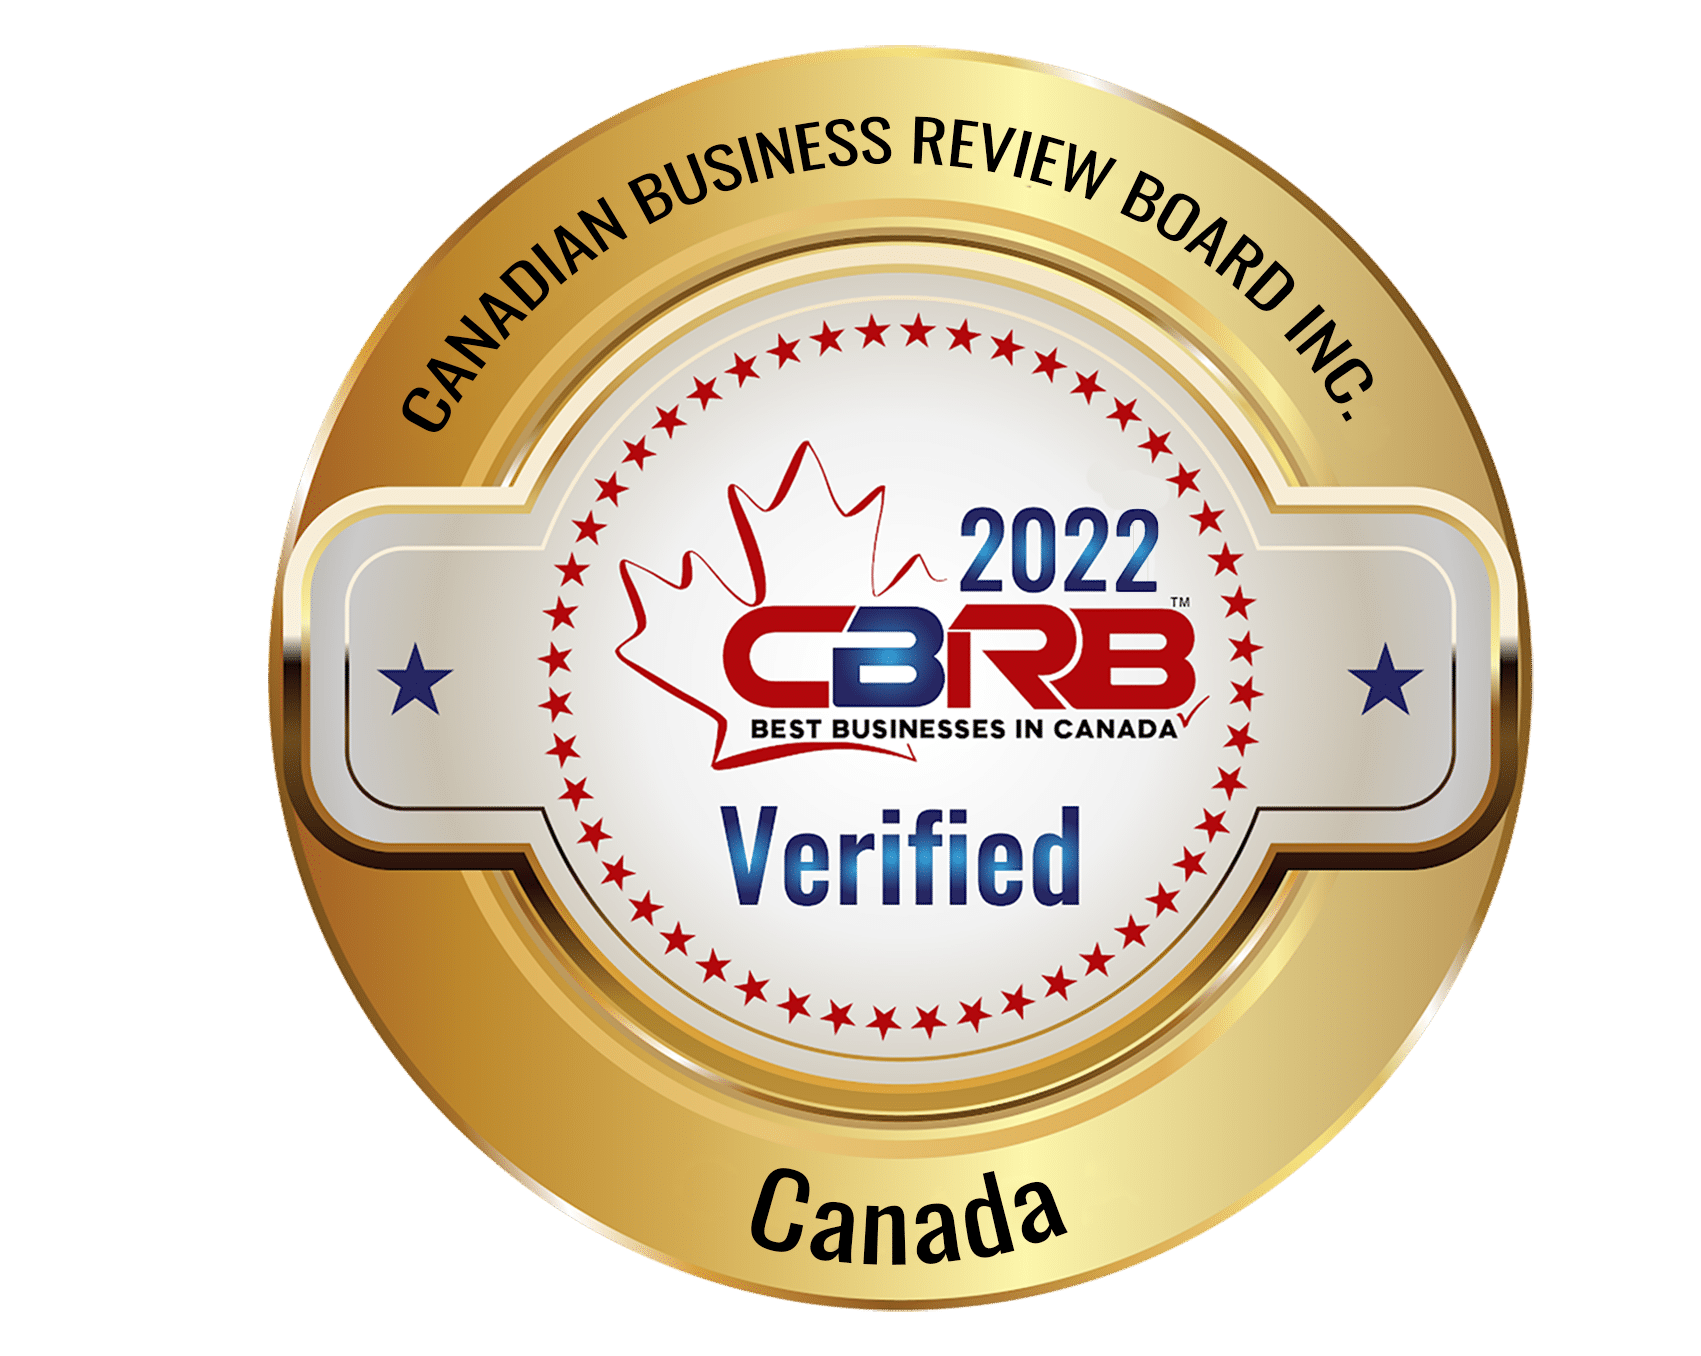 2022 CBRB Inc Logo